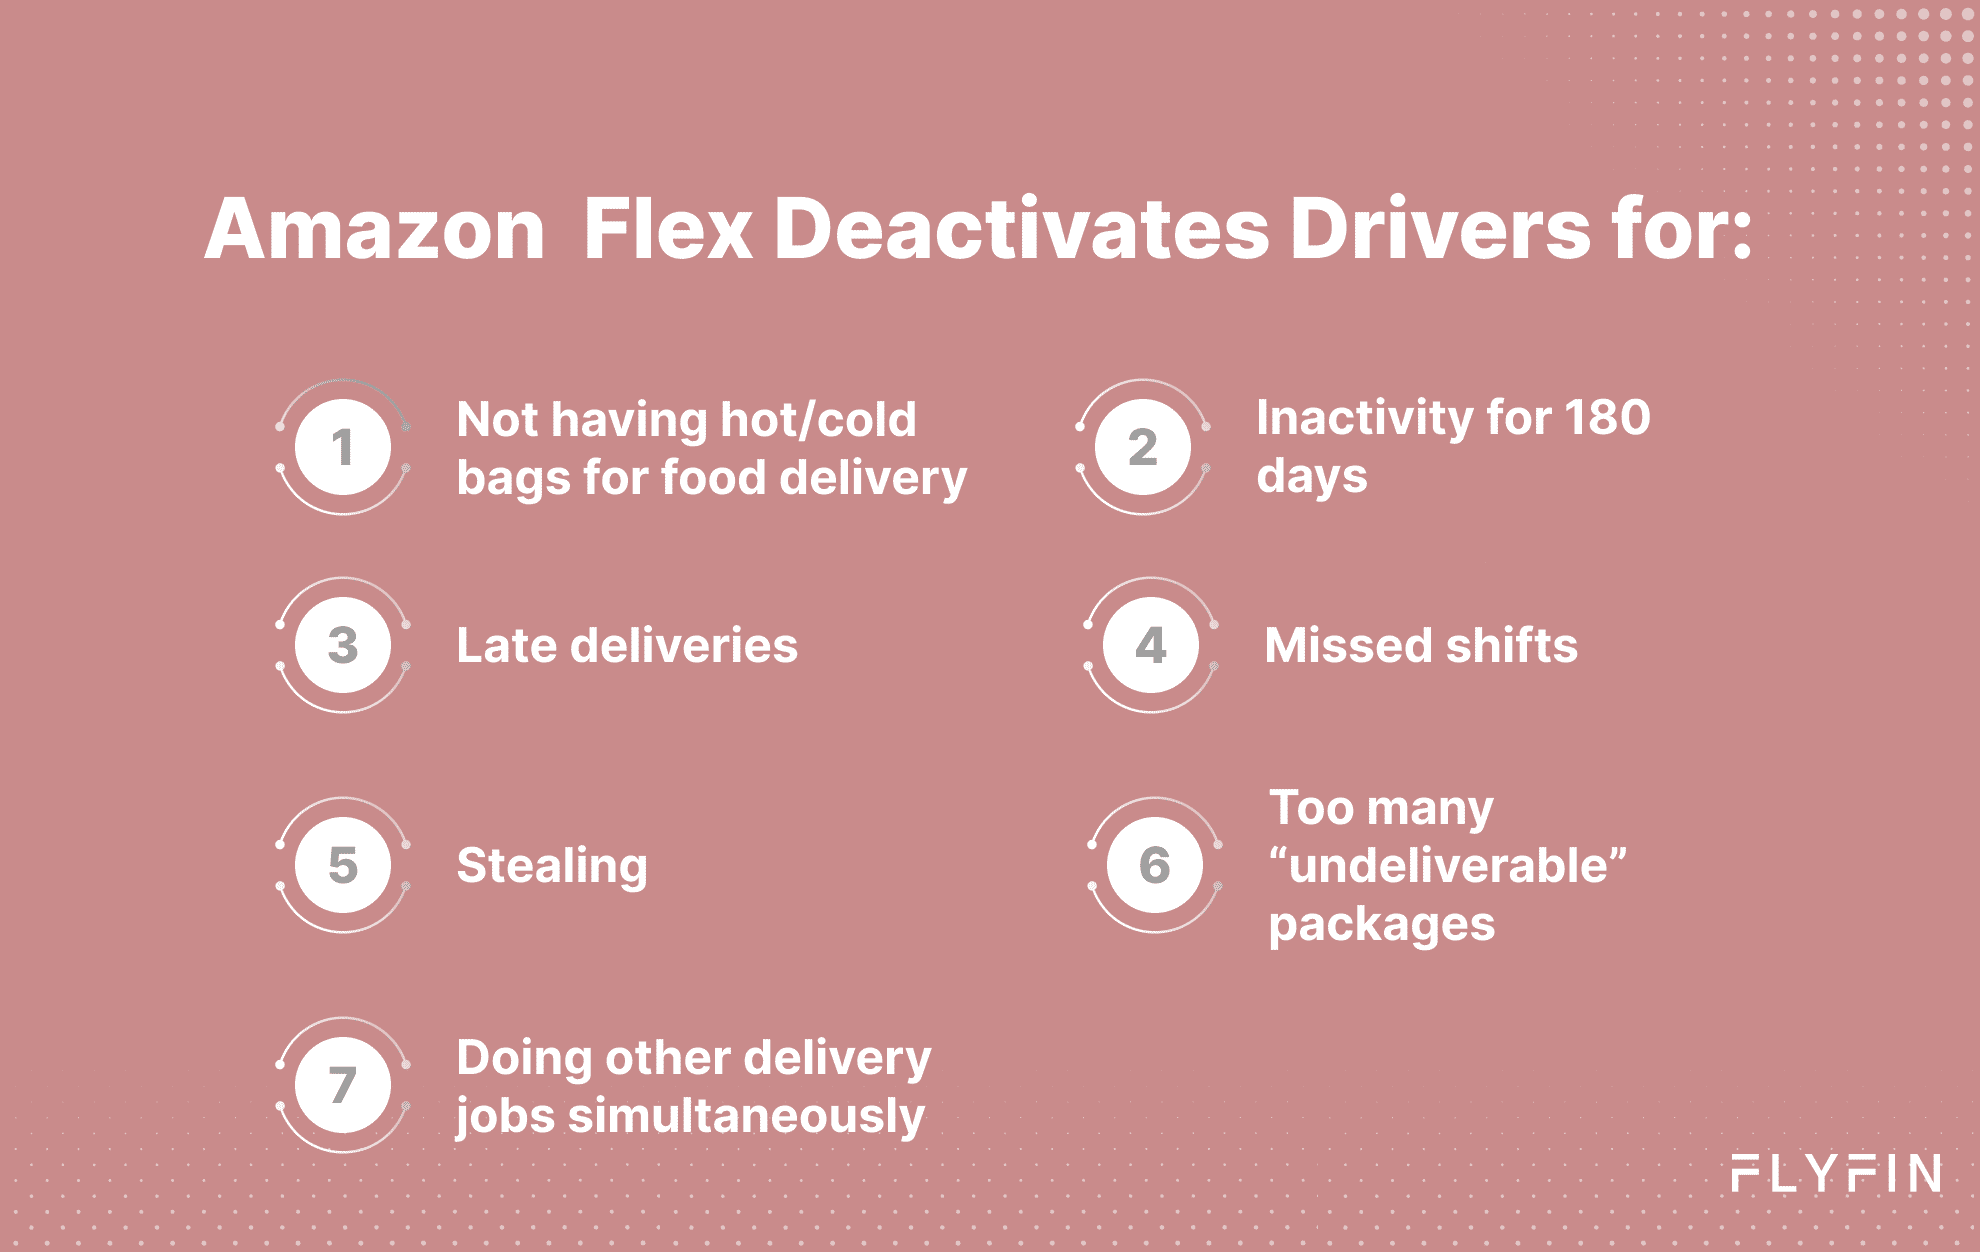 When does Amazon deactivate drivers?